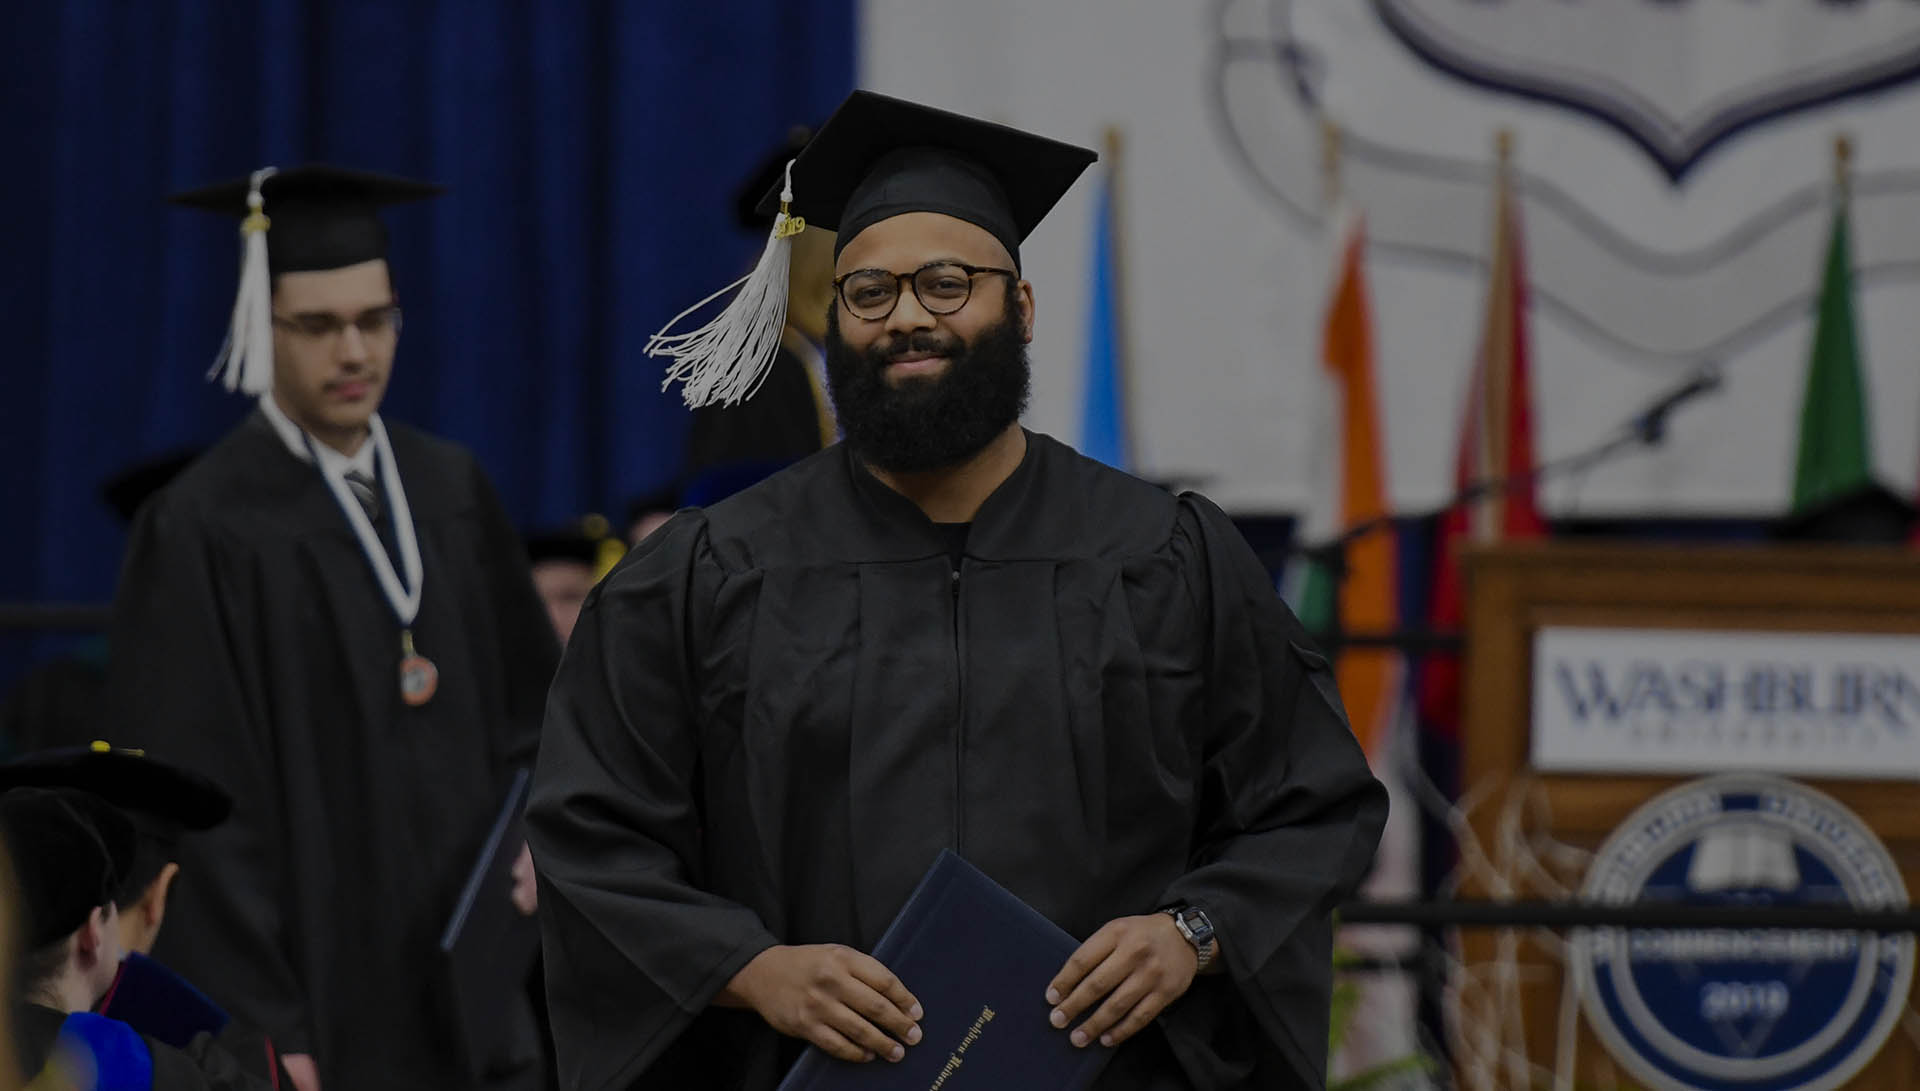 Student smiling at graduation in regalia